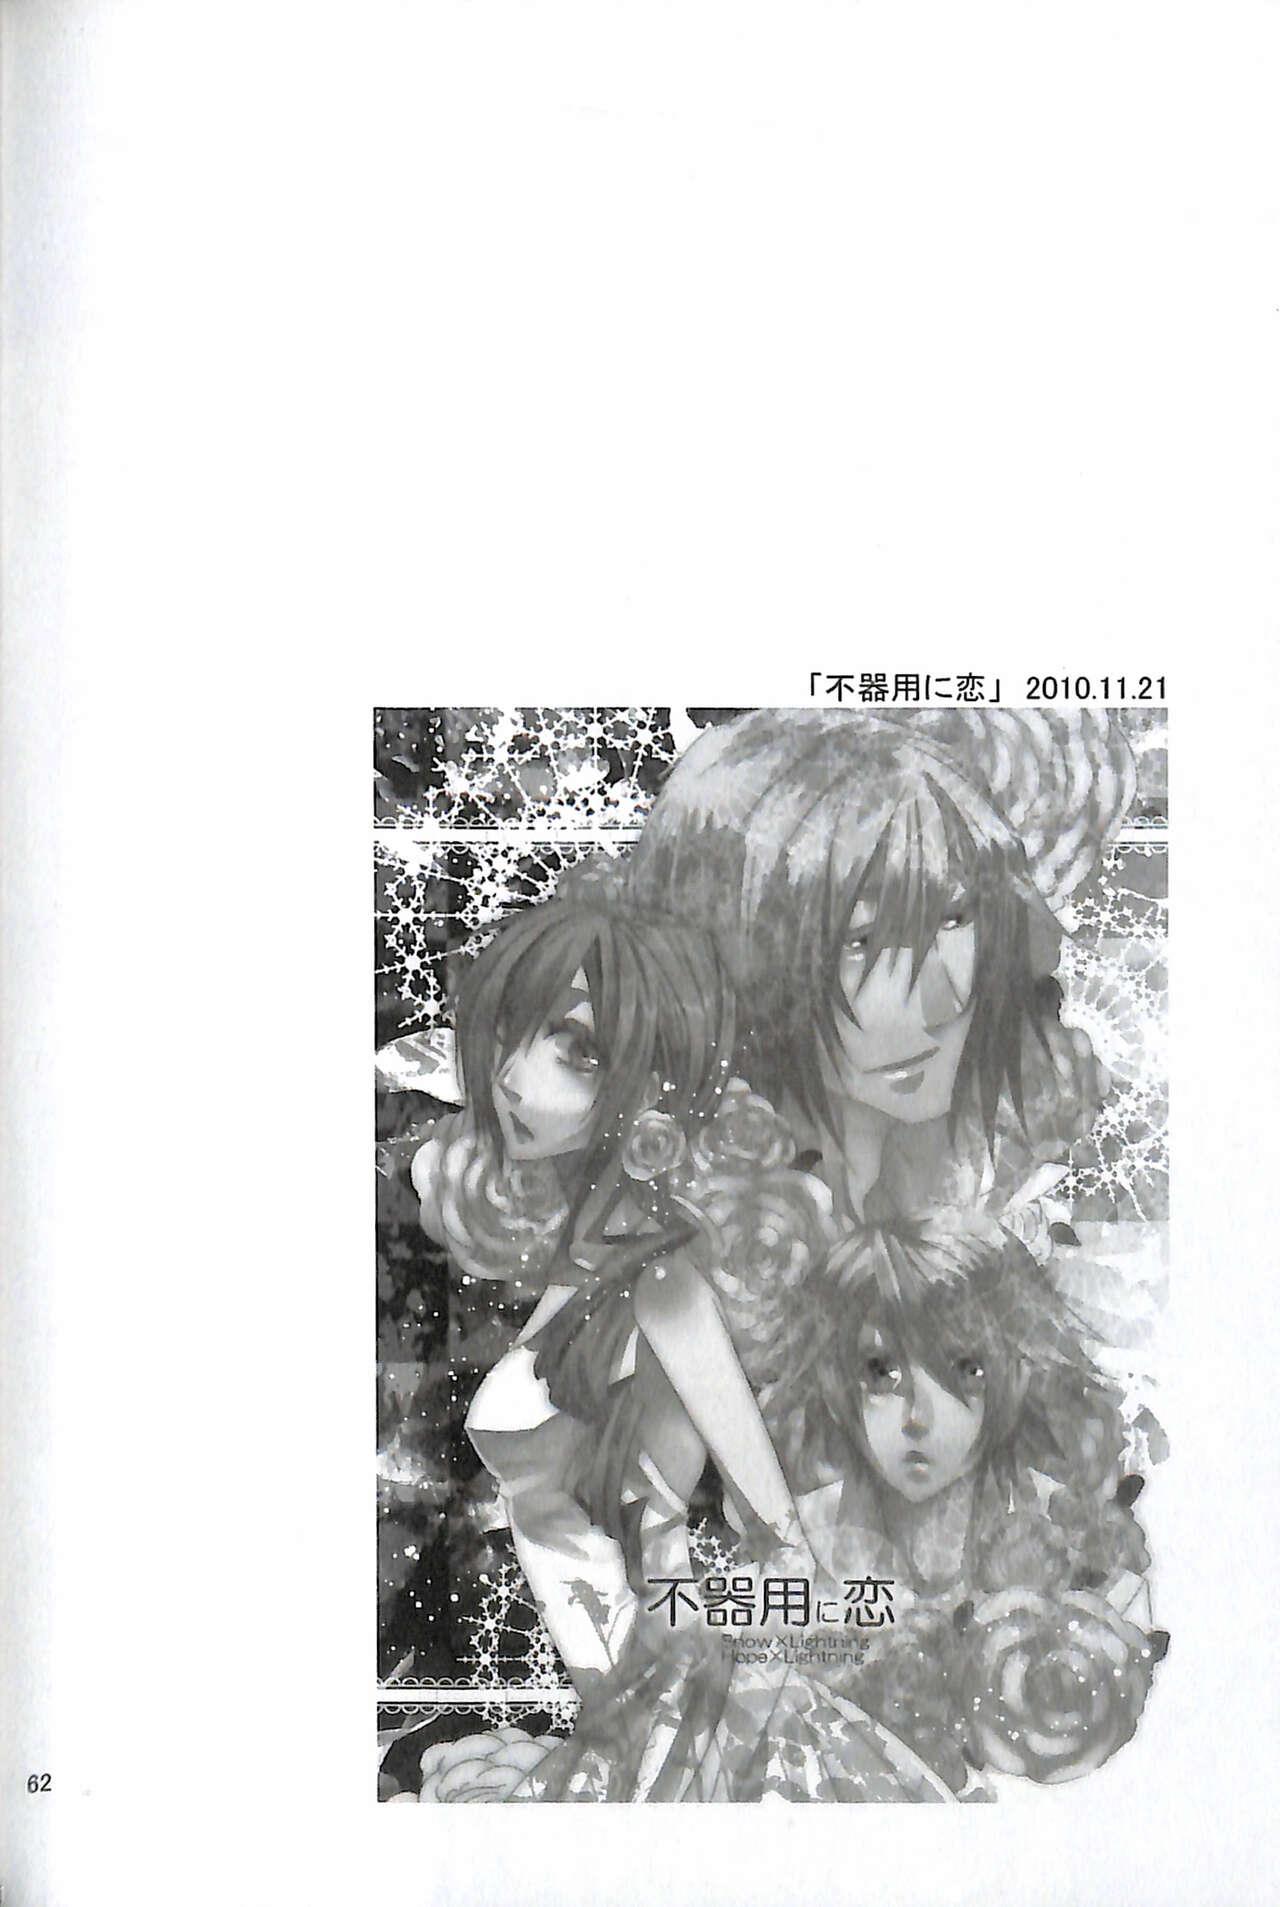 Final Fantasy 13 Fan book 63